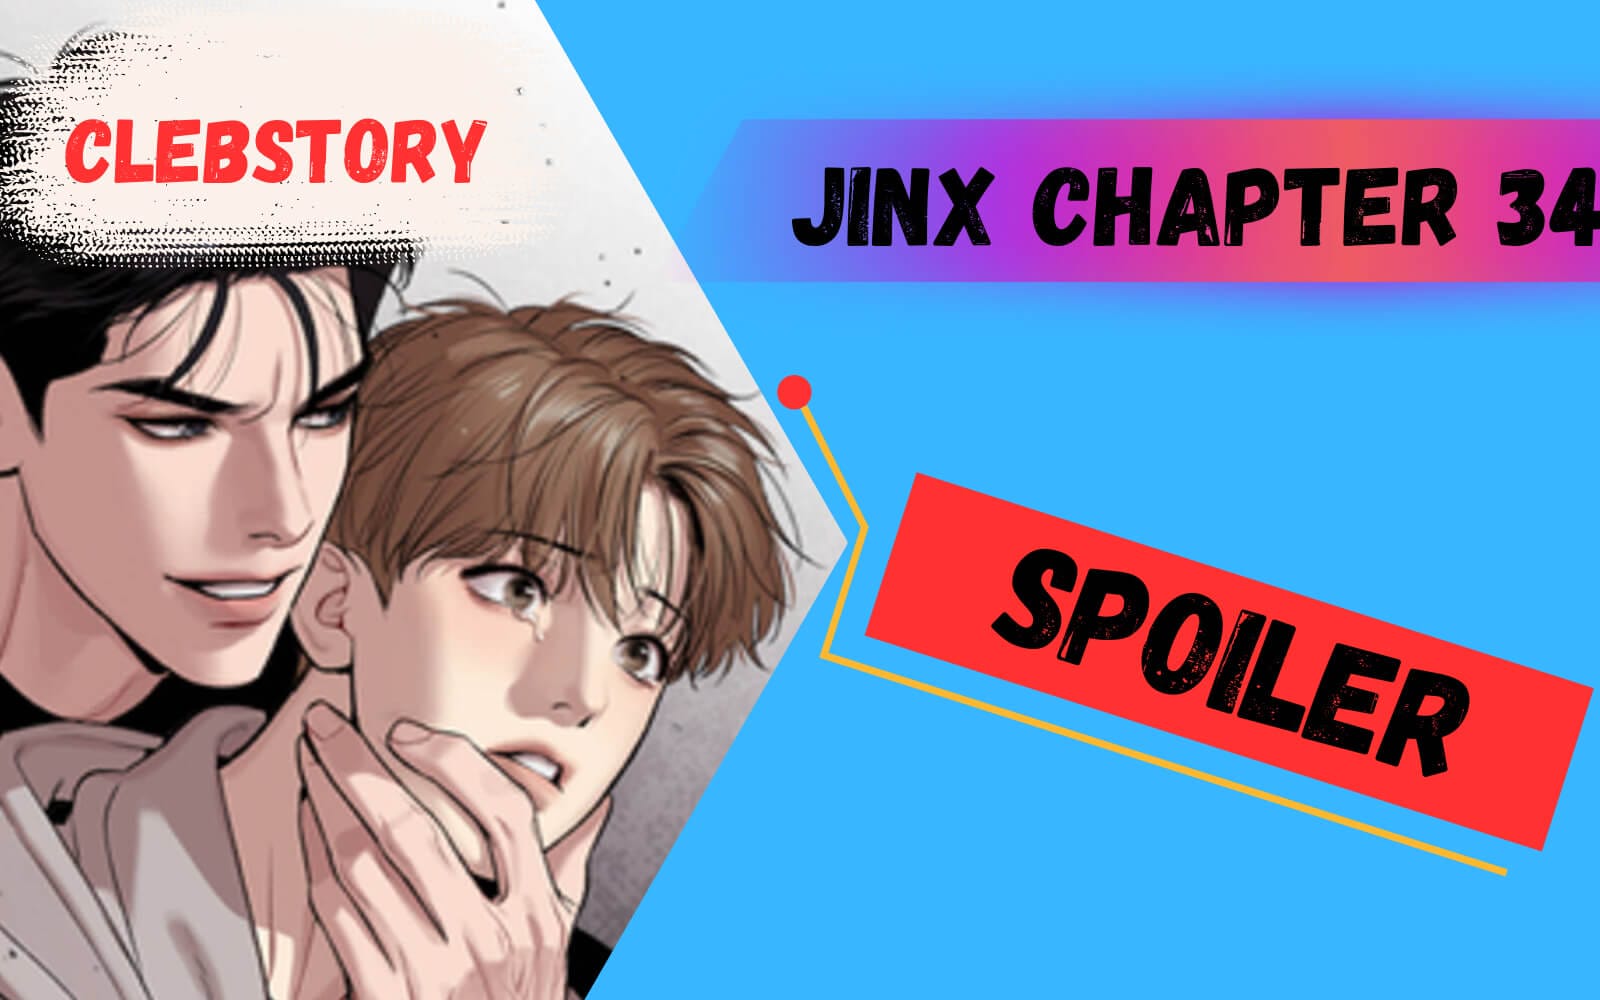 Jinx Chapter 31 spoiler